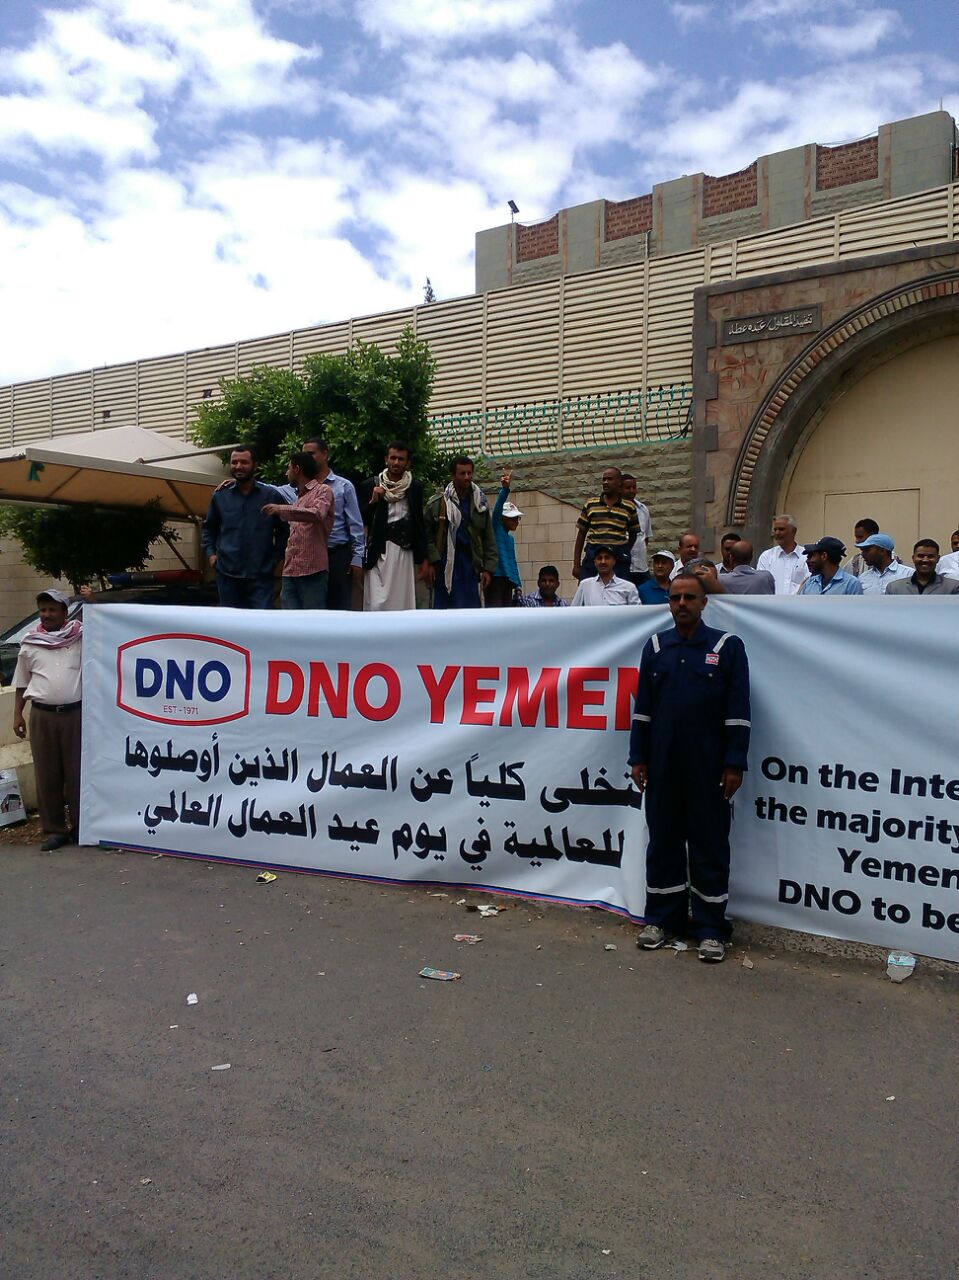 Jemenittiske arbeidere demonstrerer utenforkontoret til DNO sitt kontor i Saana. Deres krav er at ledelsen i DNO setter seg ned med fagforeningene og jobber frem en rettferdig pakke for de oppsagte arbeiderne.